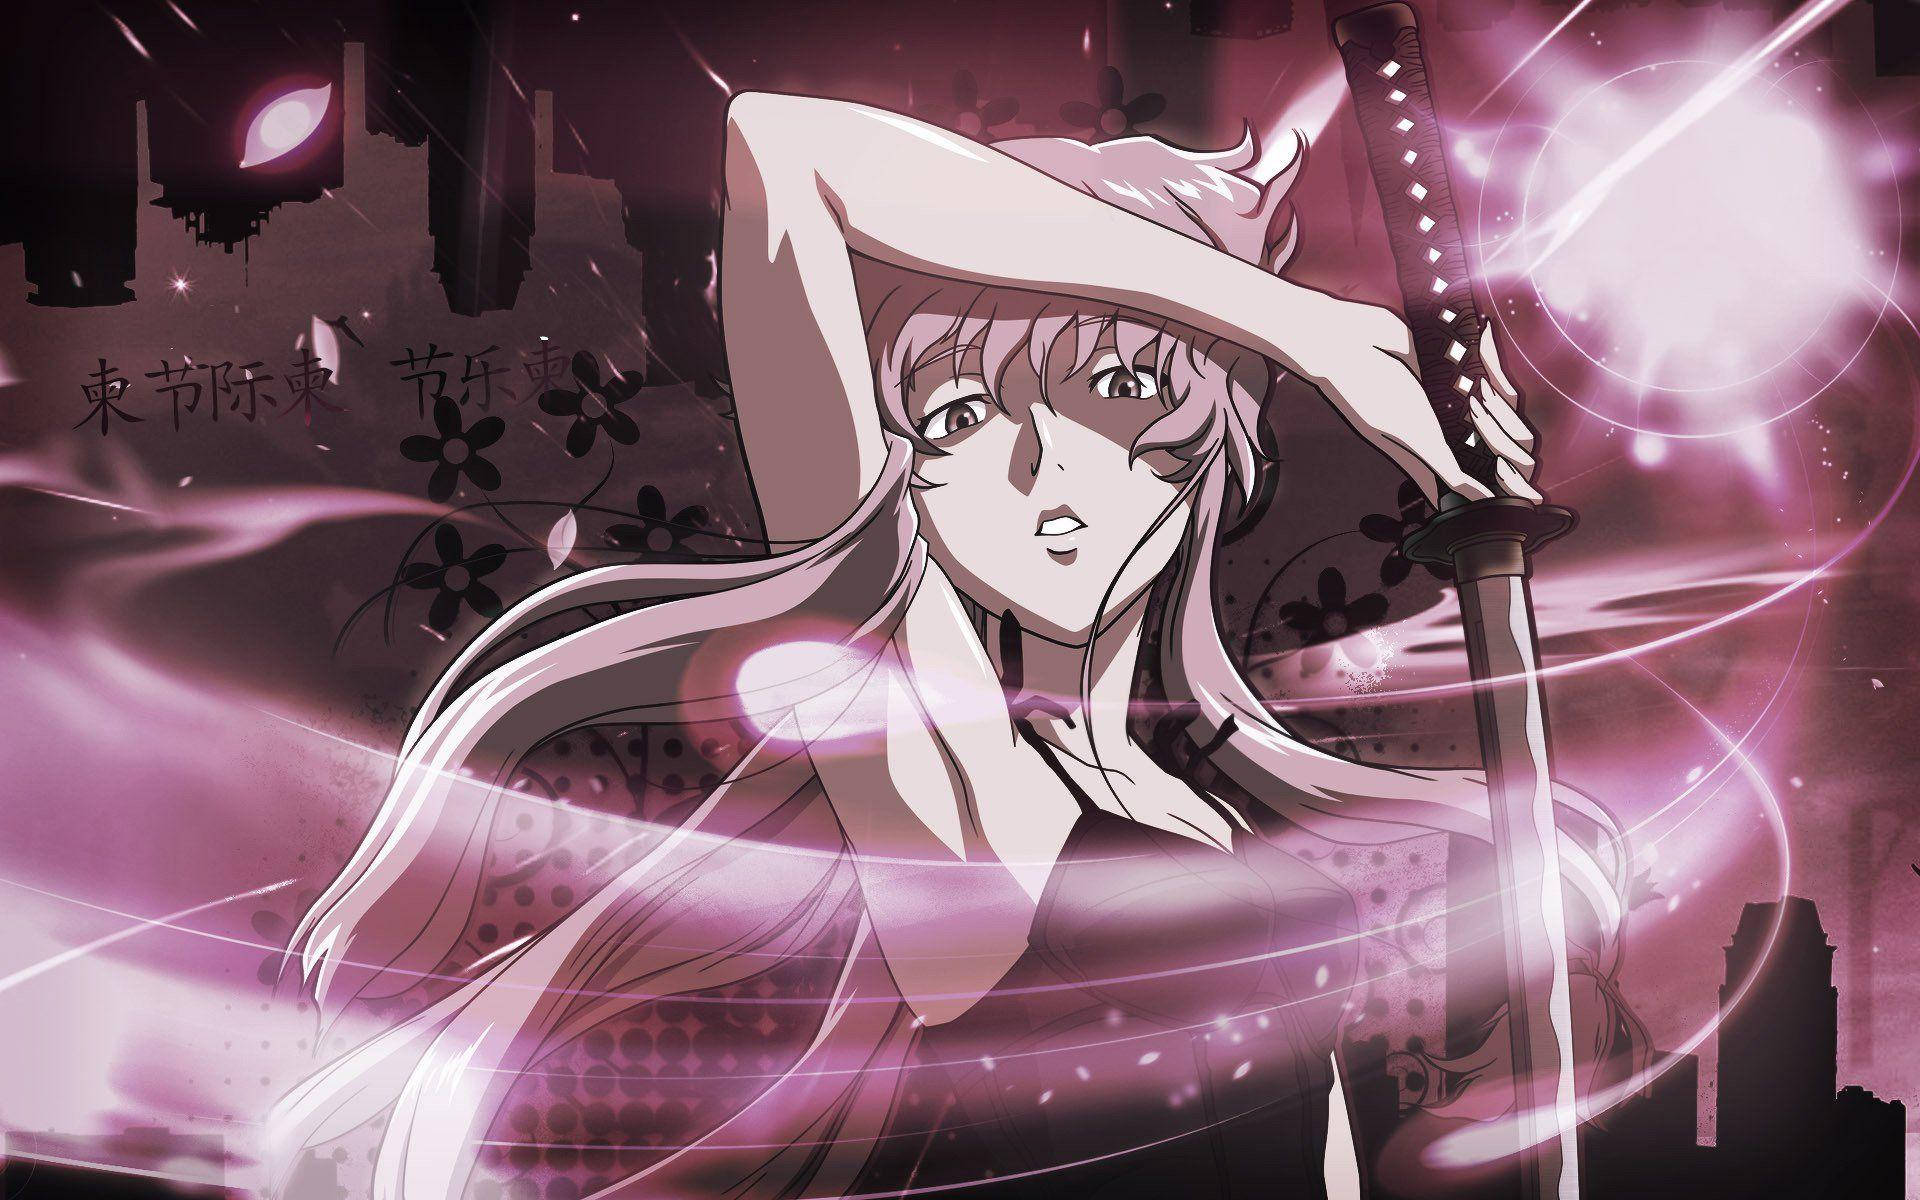 A Yuno Gasai Mágica É Um Personagem De Anime Popular Frequentemente Encontrado Em Papéis De Parede De Computador. Papel de Parede